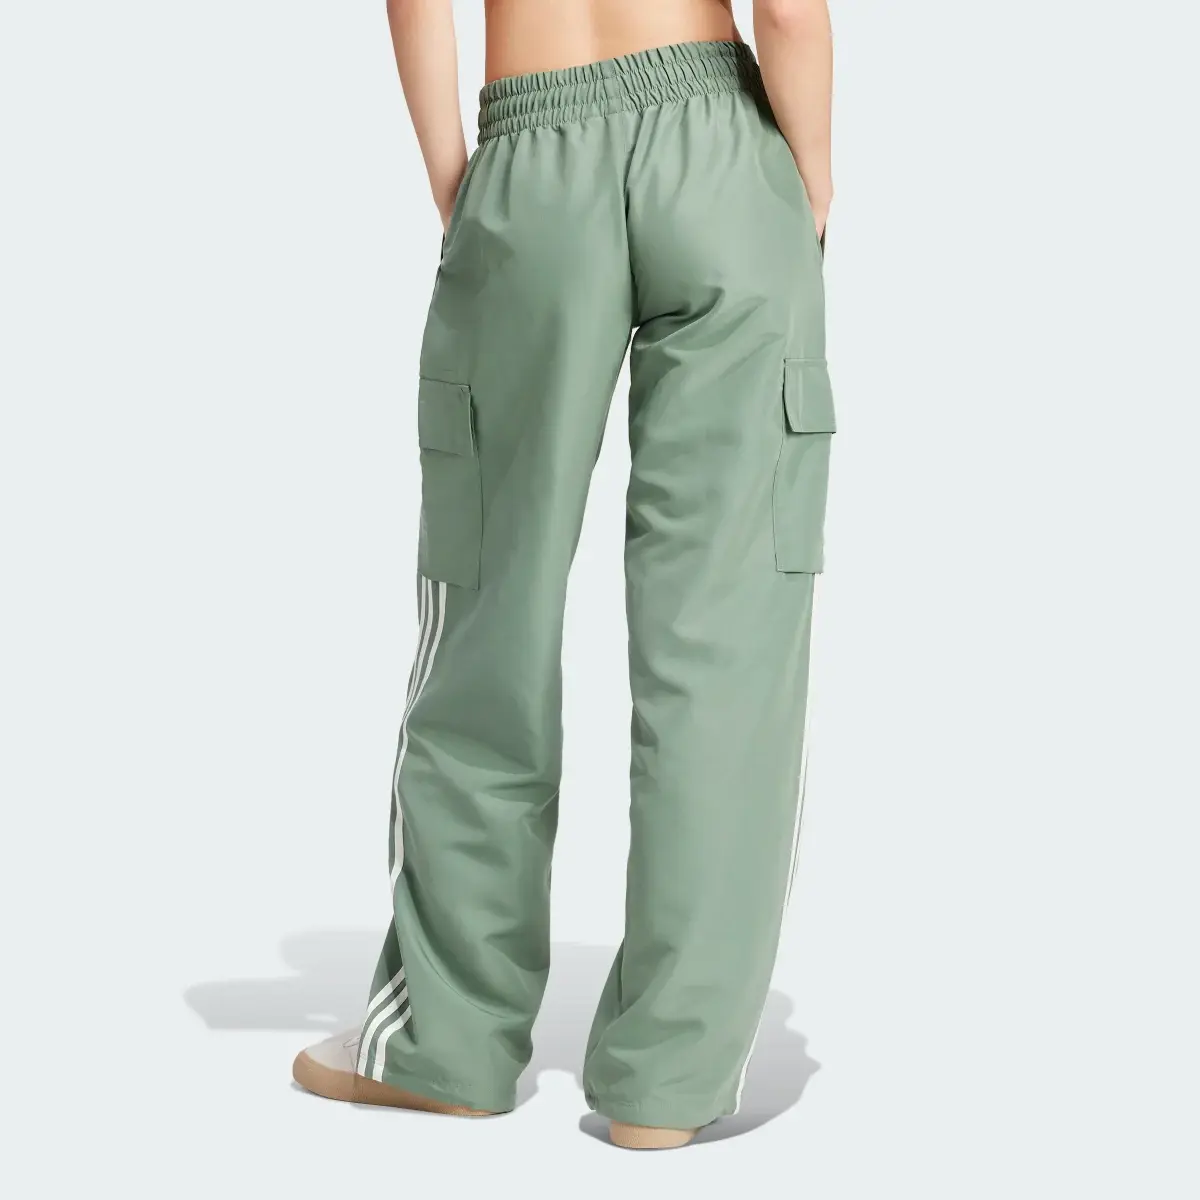 Adidas Originals Adicolor Cargo Pants. 2